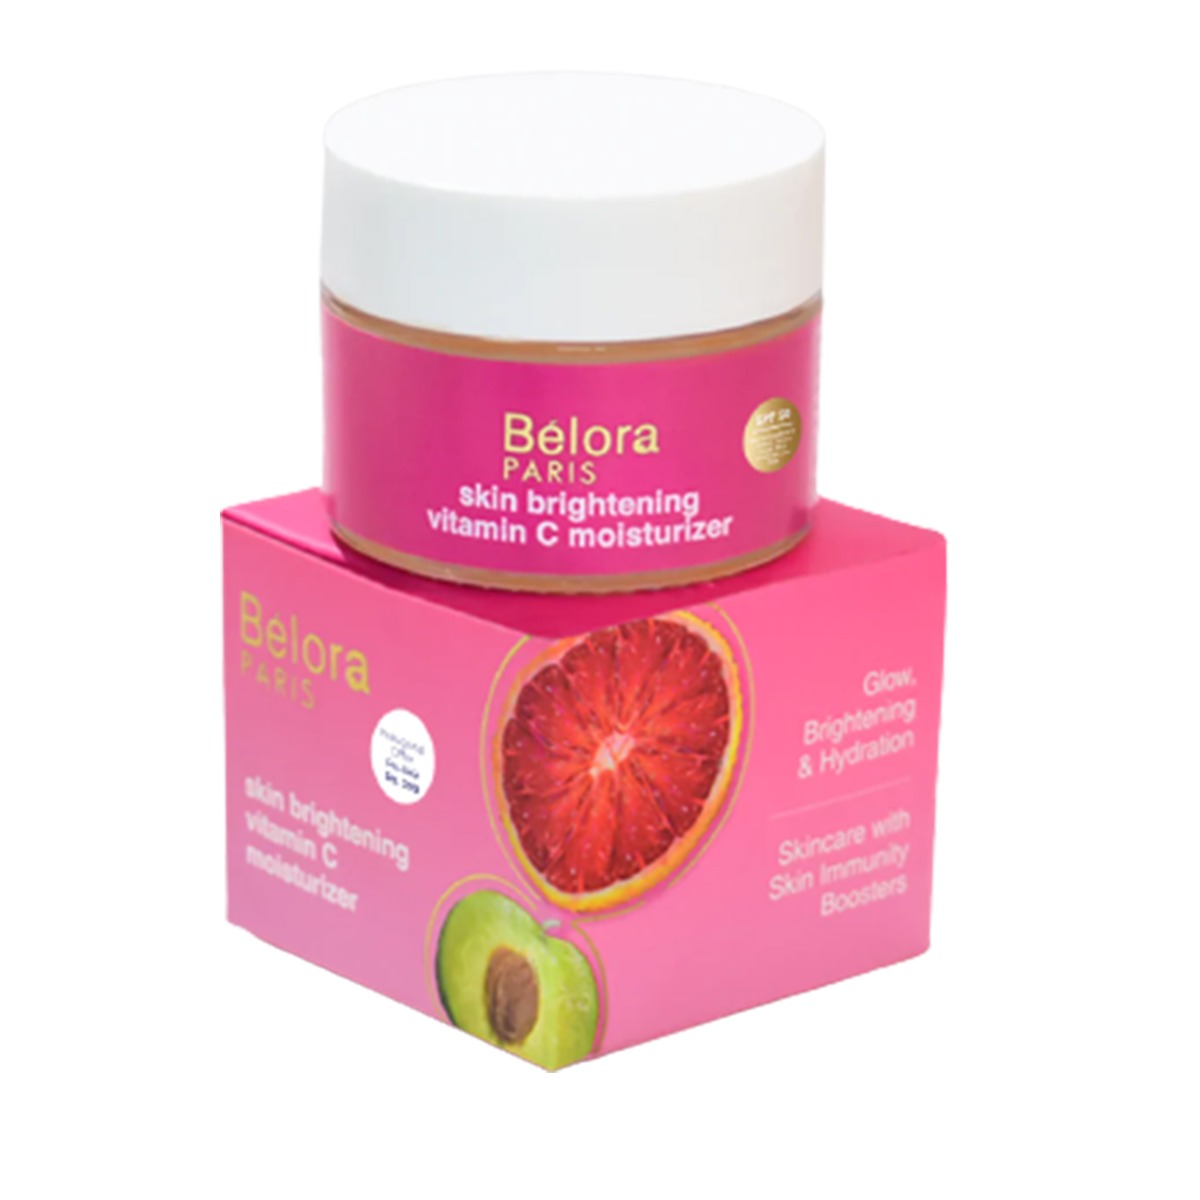 Belora Paris Skin Brightening Vitamin C Moisturizer with SPF 50, 50ml